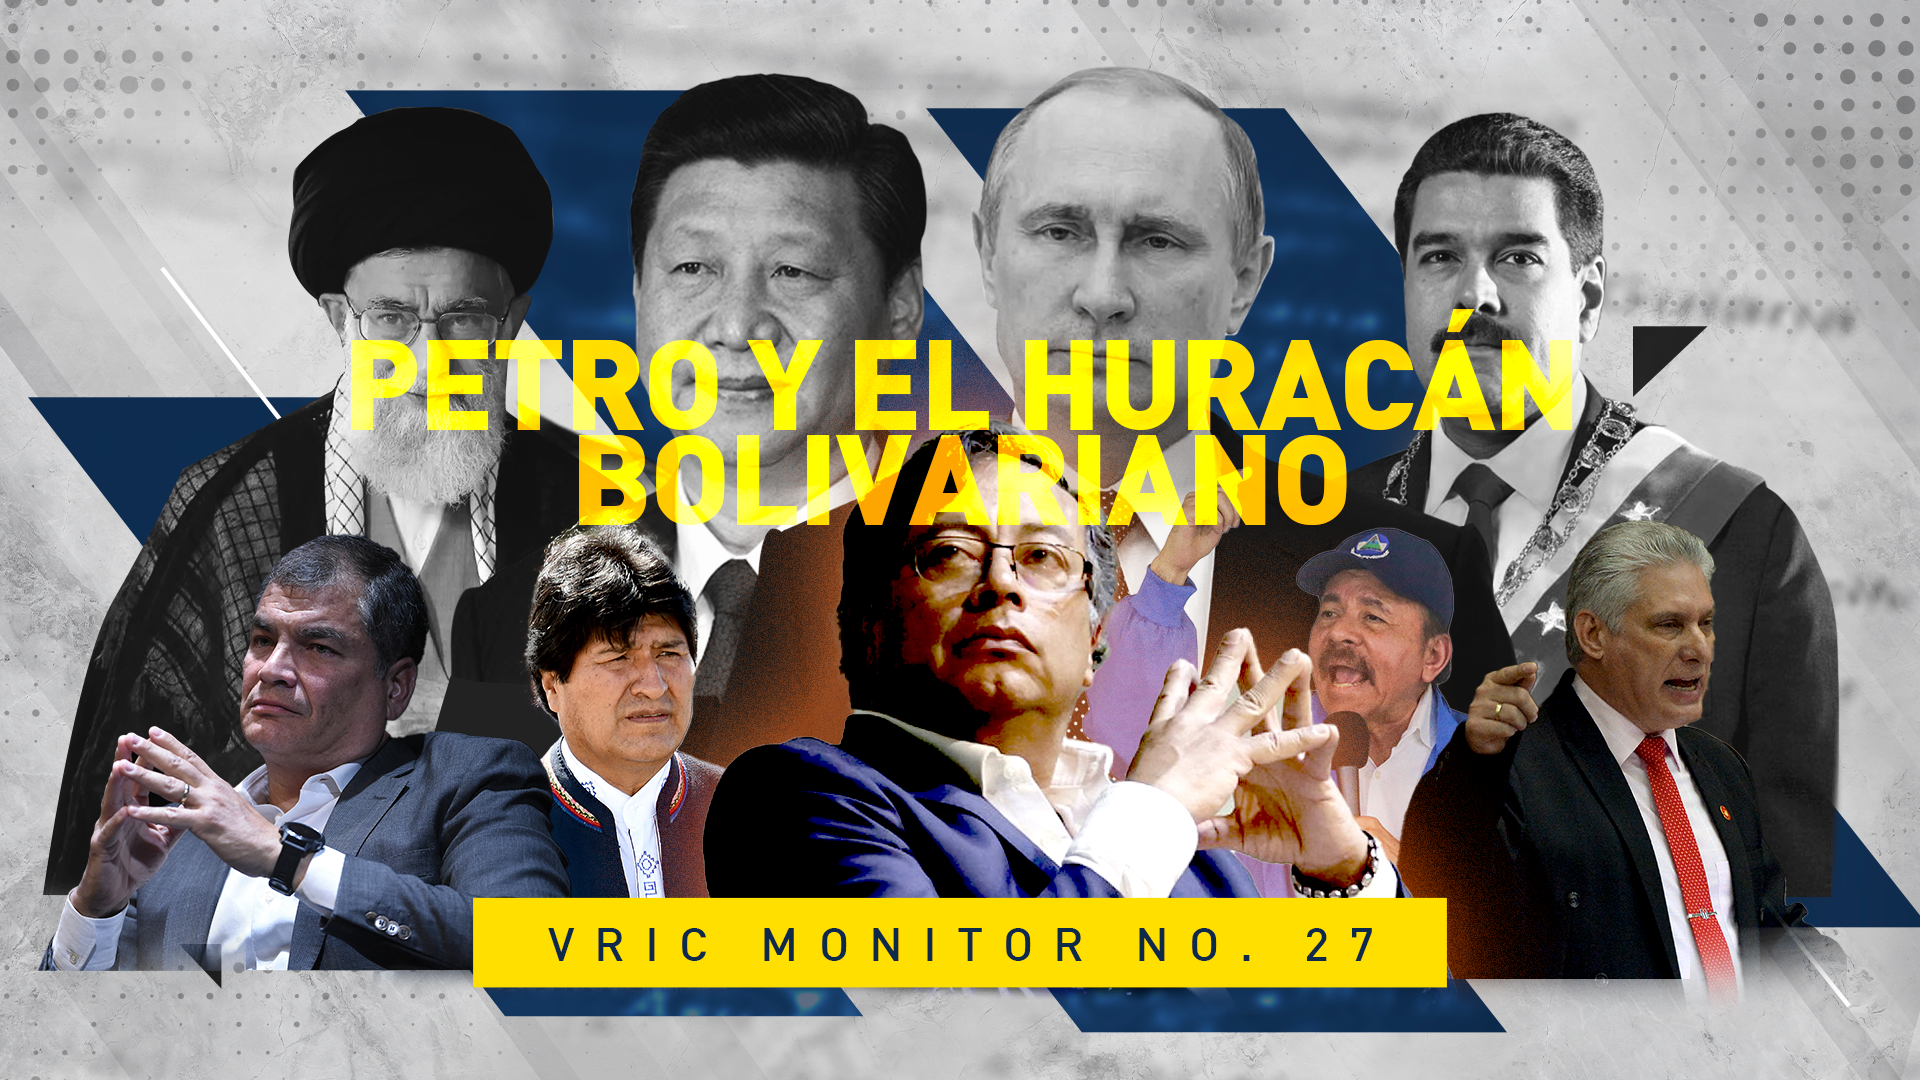 VRIC MONITOR No. 27 | Petro y el Huracán Bolivariano